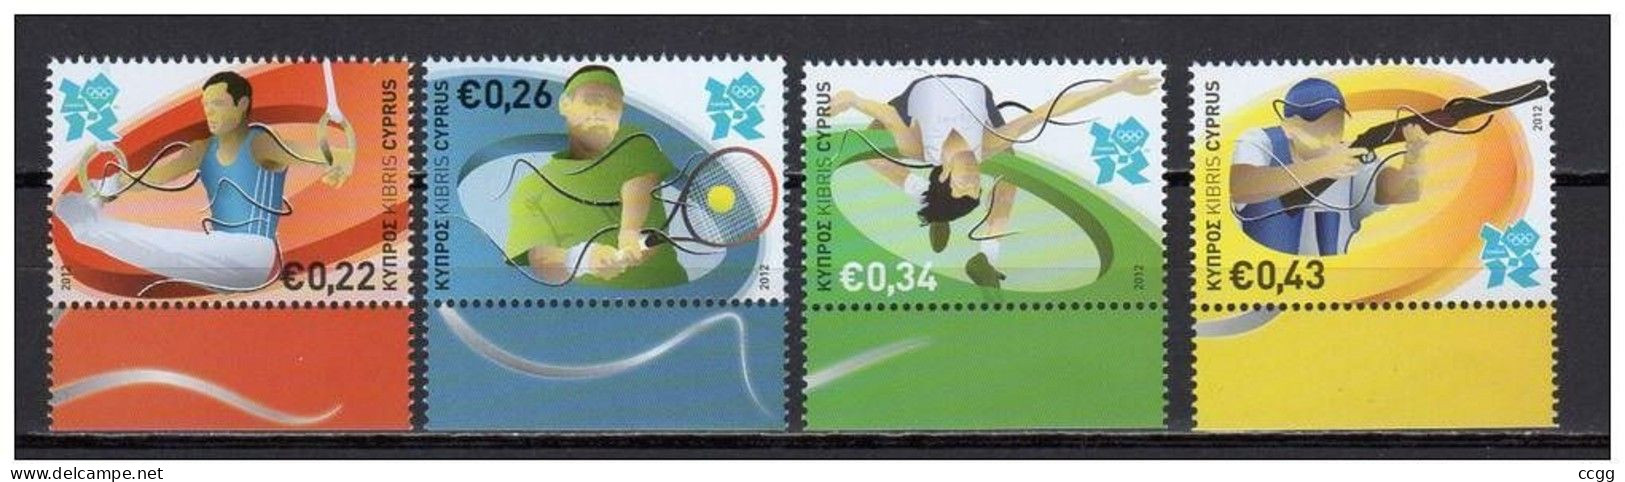 Olympische Spelen 2012 , Cyprus - Zegels Postfris - Zomer 2012: Londen